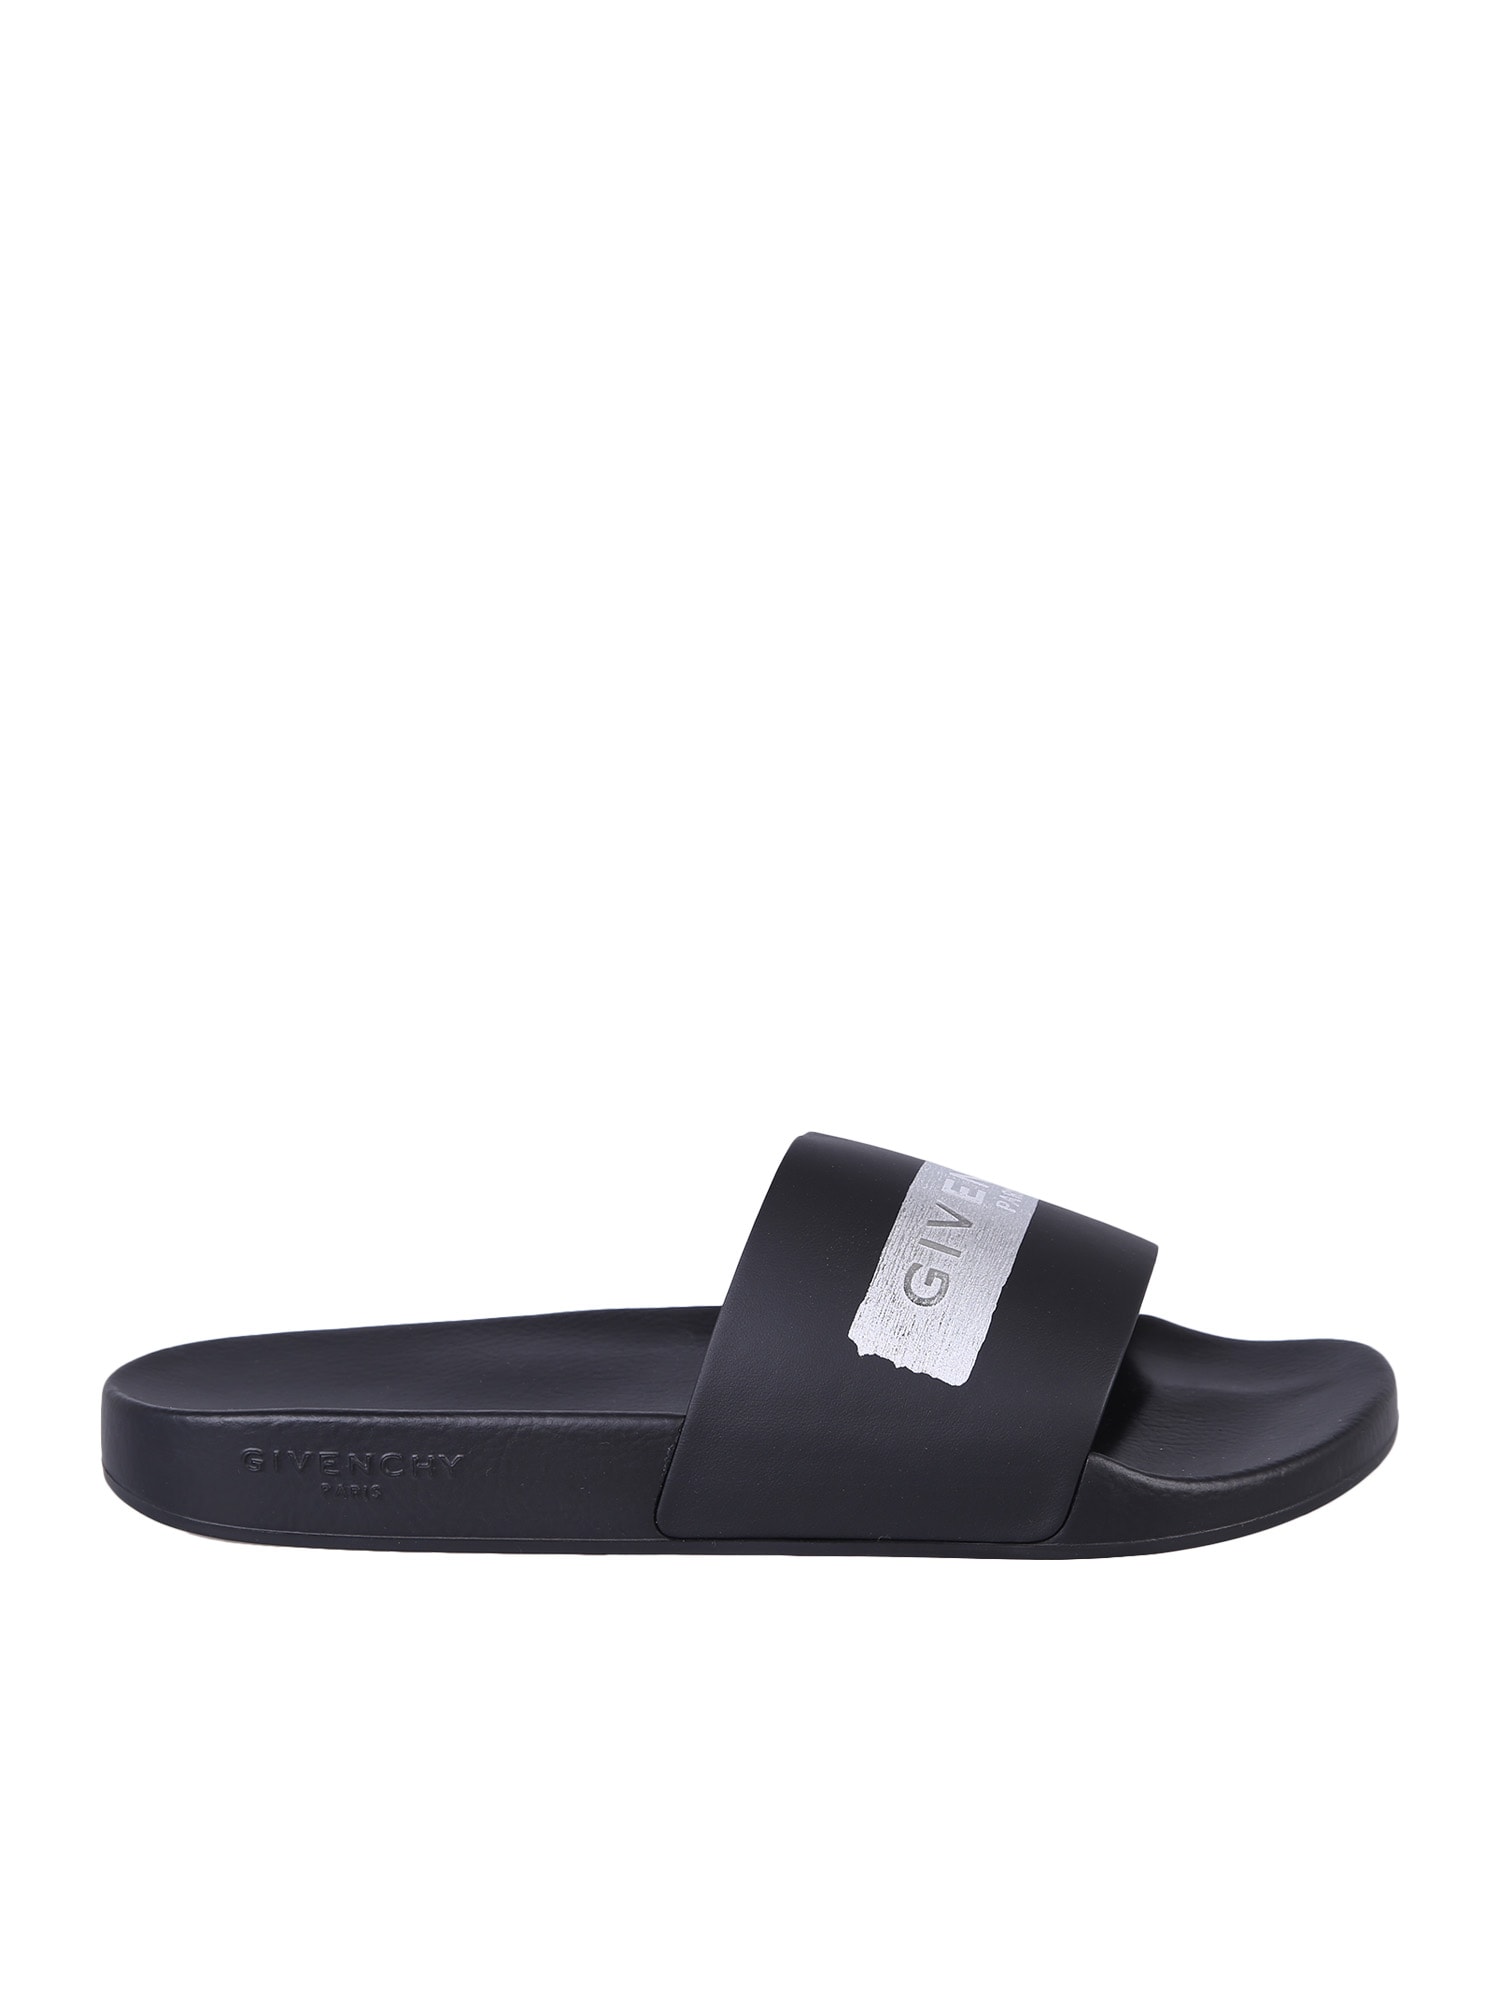 Givenchy Slide Sandals